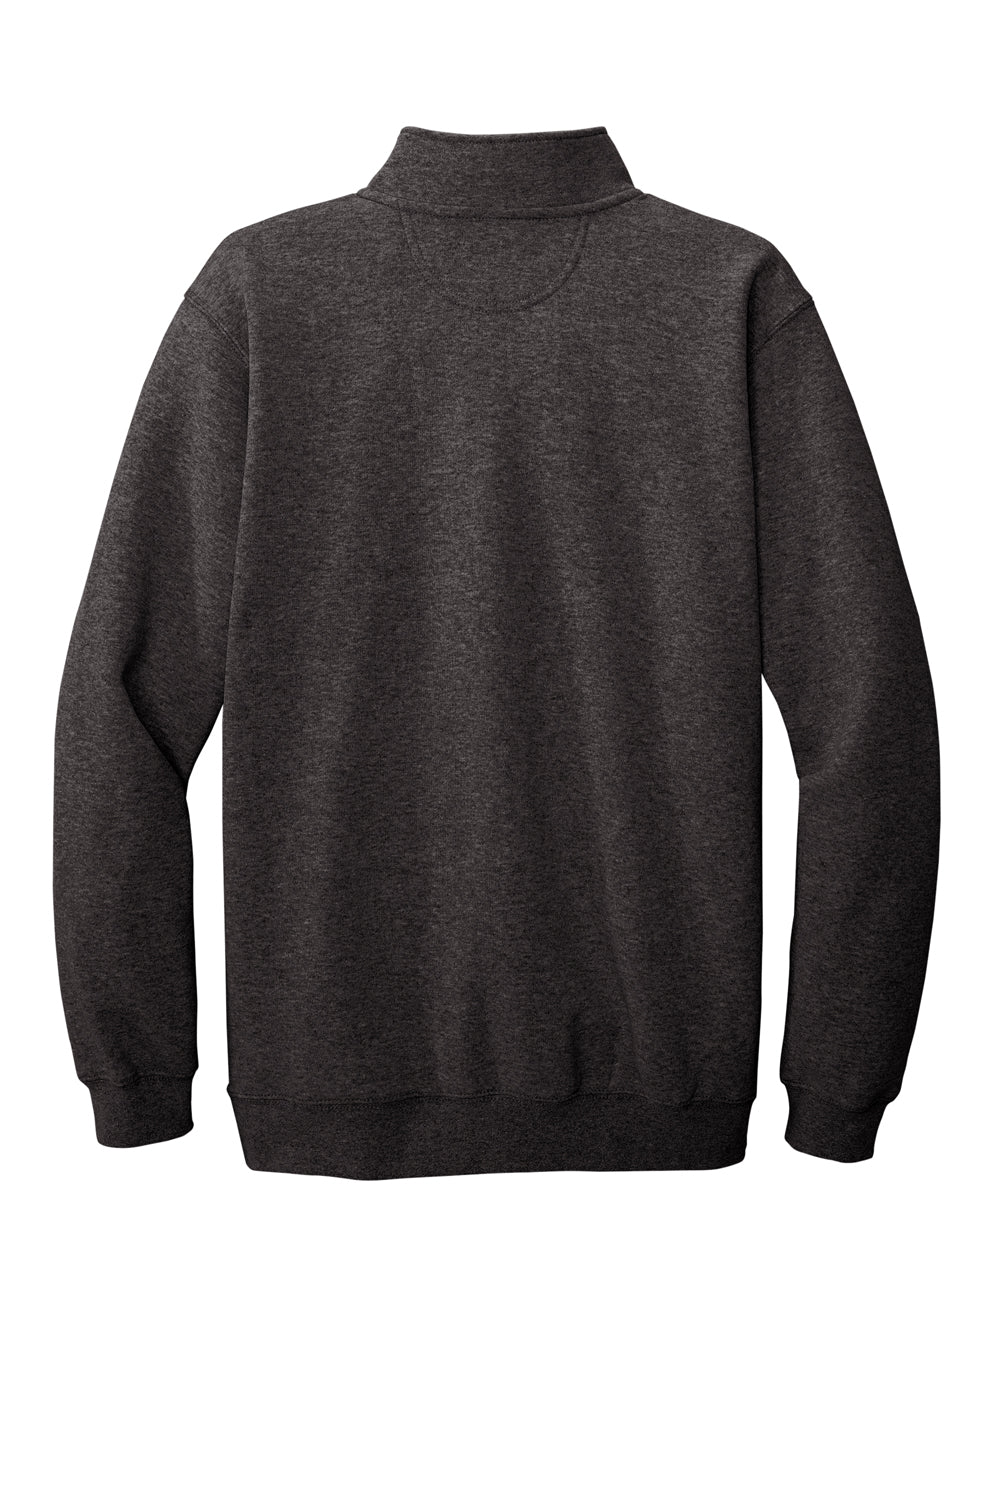 Carhartt CT105294 Mens 1/4 Zip Sweatshirt Heather Carbon Grey Flat Back